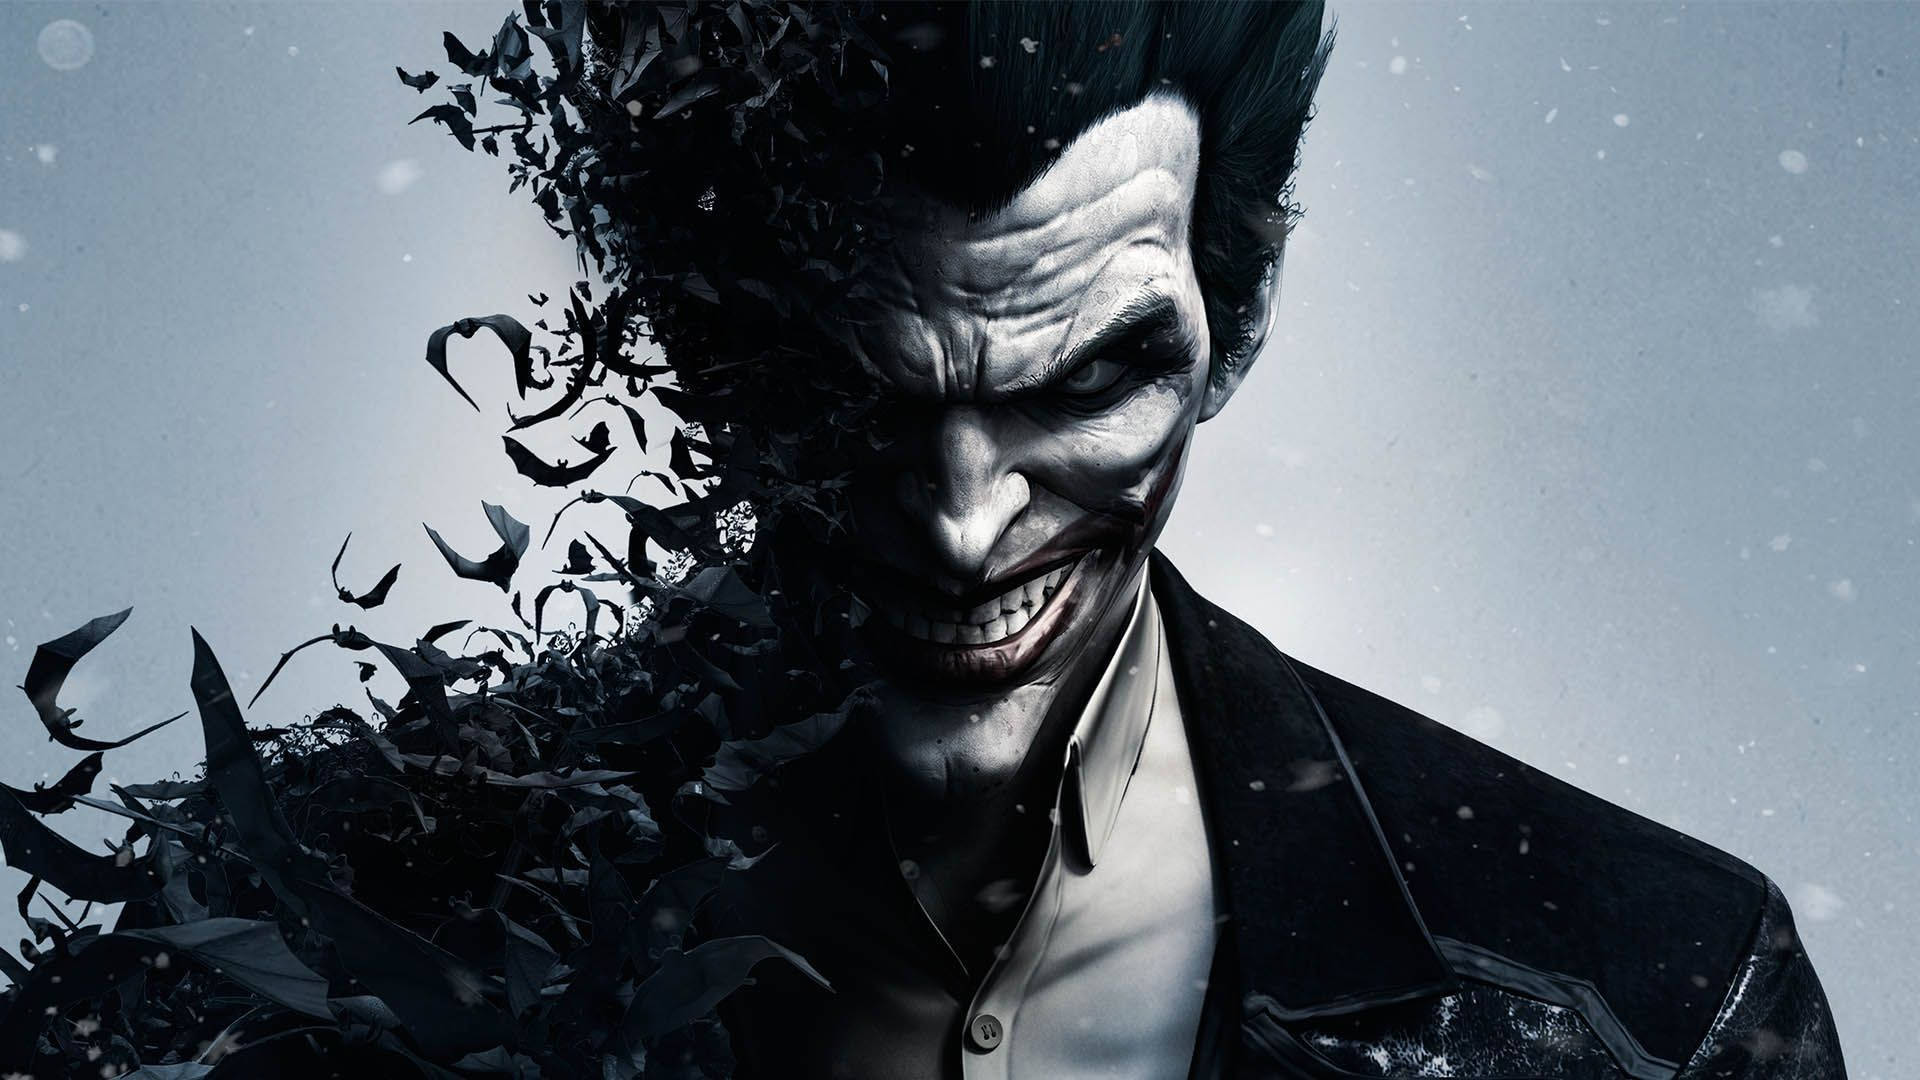 Epic Face Of Joker Wallpaper